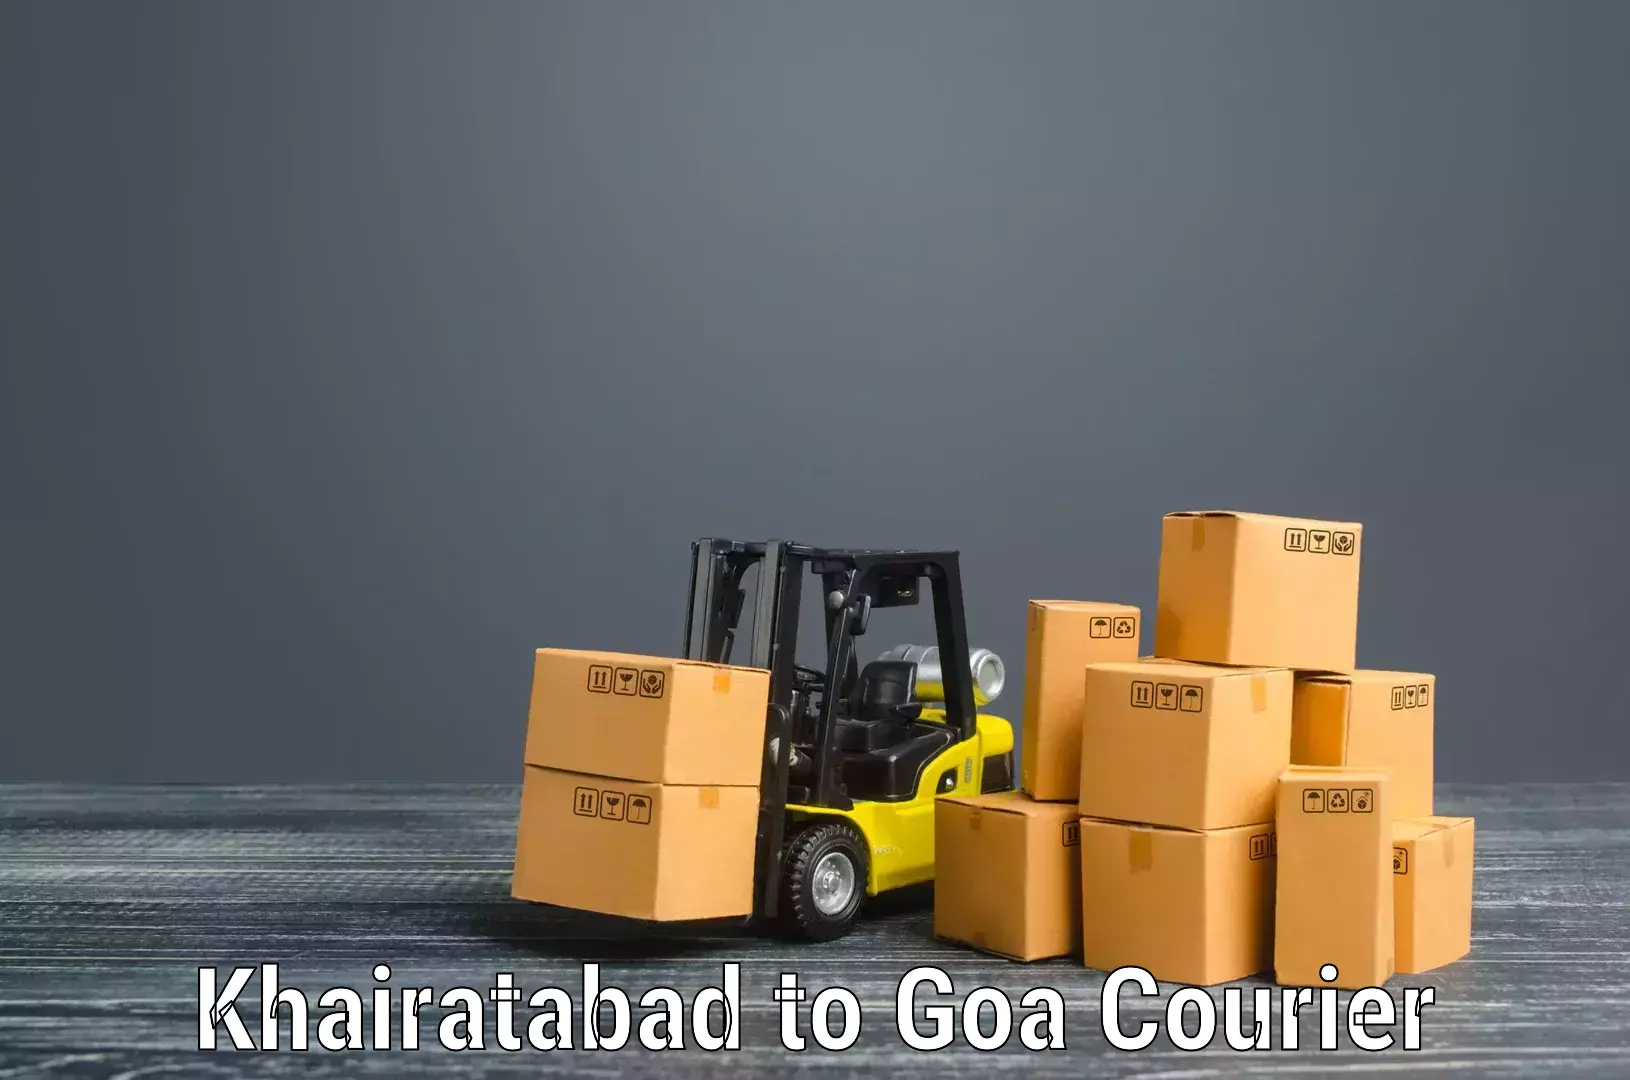 Professional movers Khairatabad to Goa University